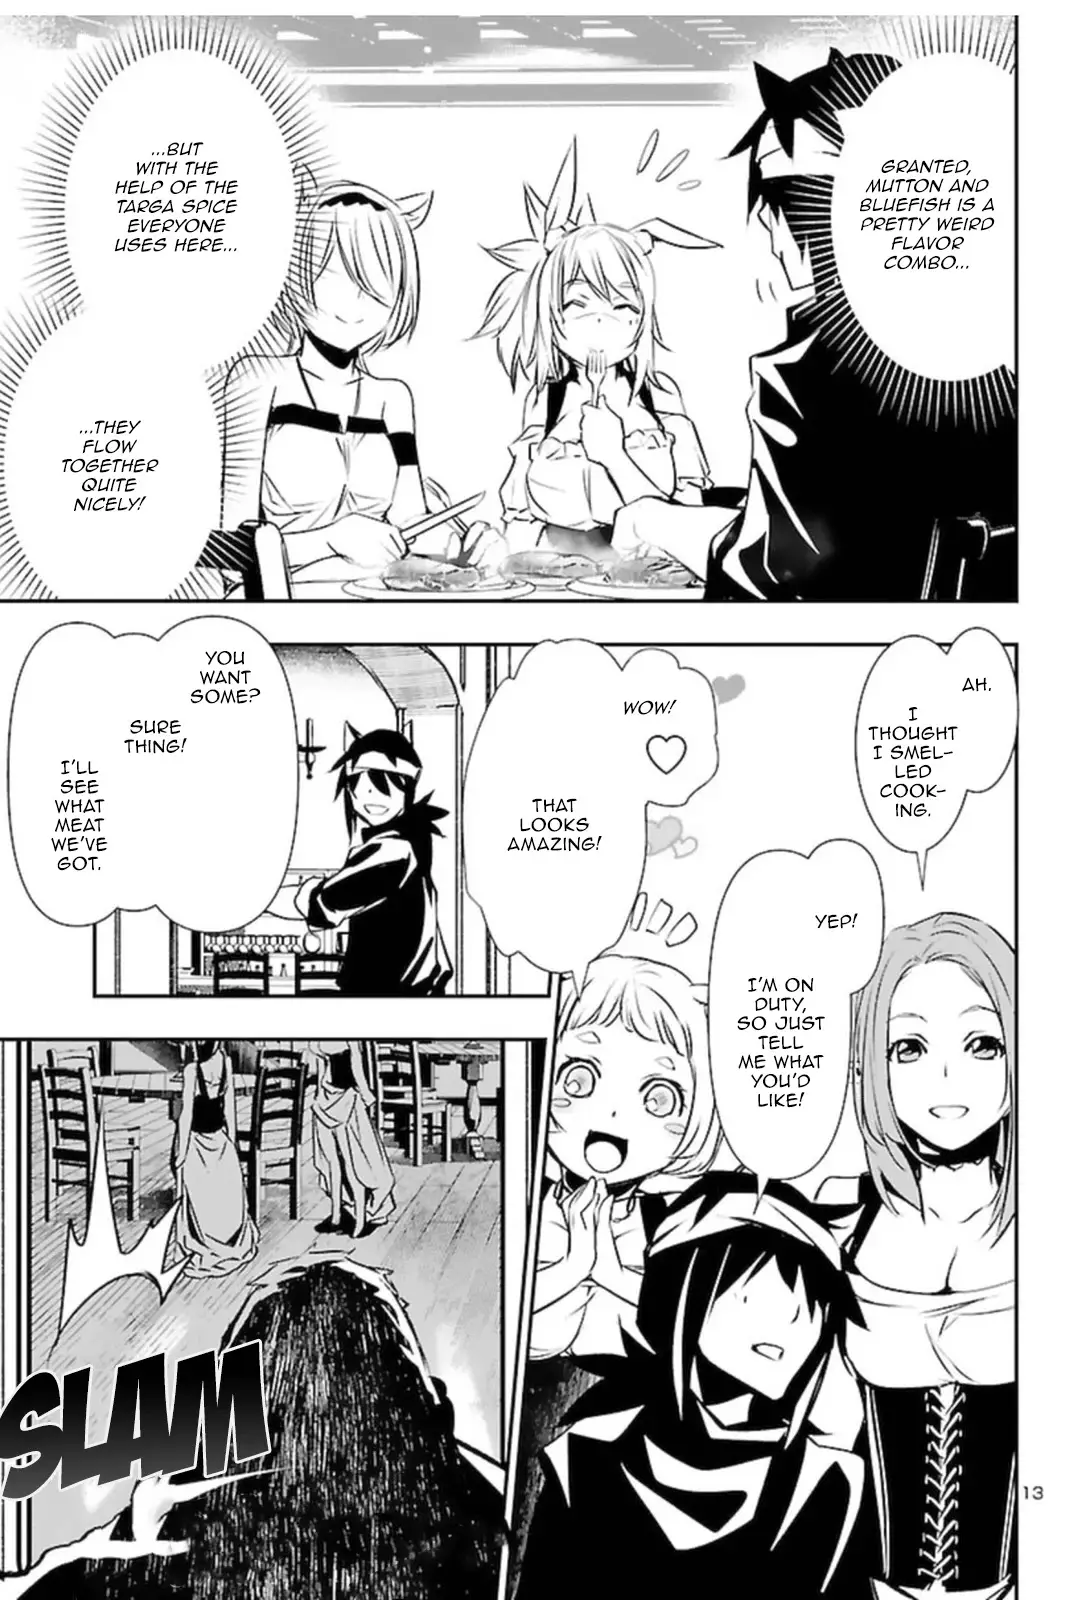 Shinju no Nectar - 56 page 12